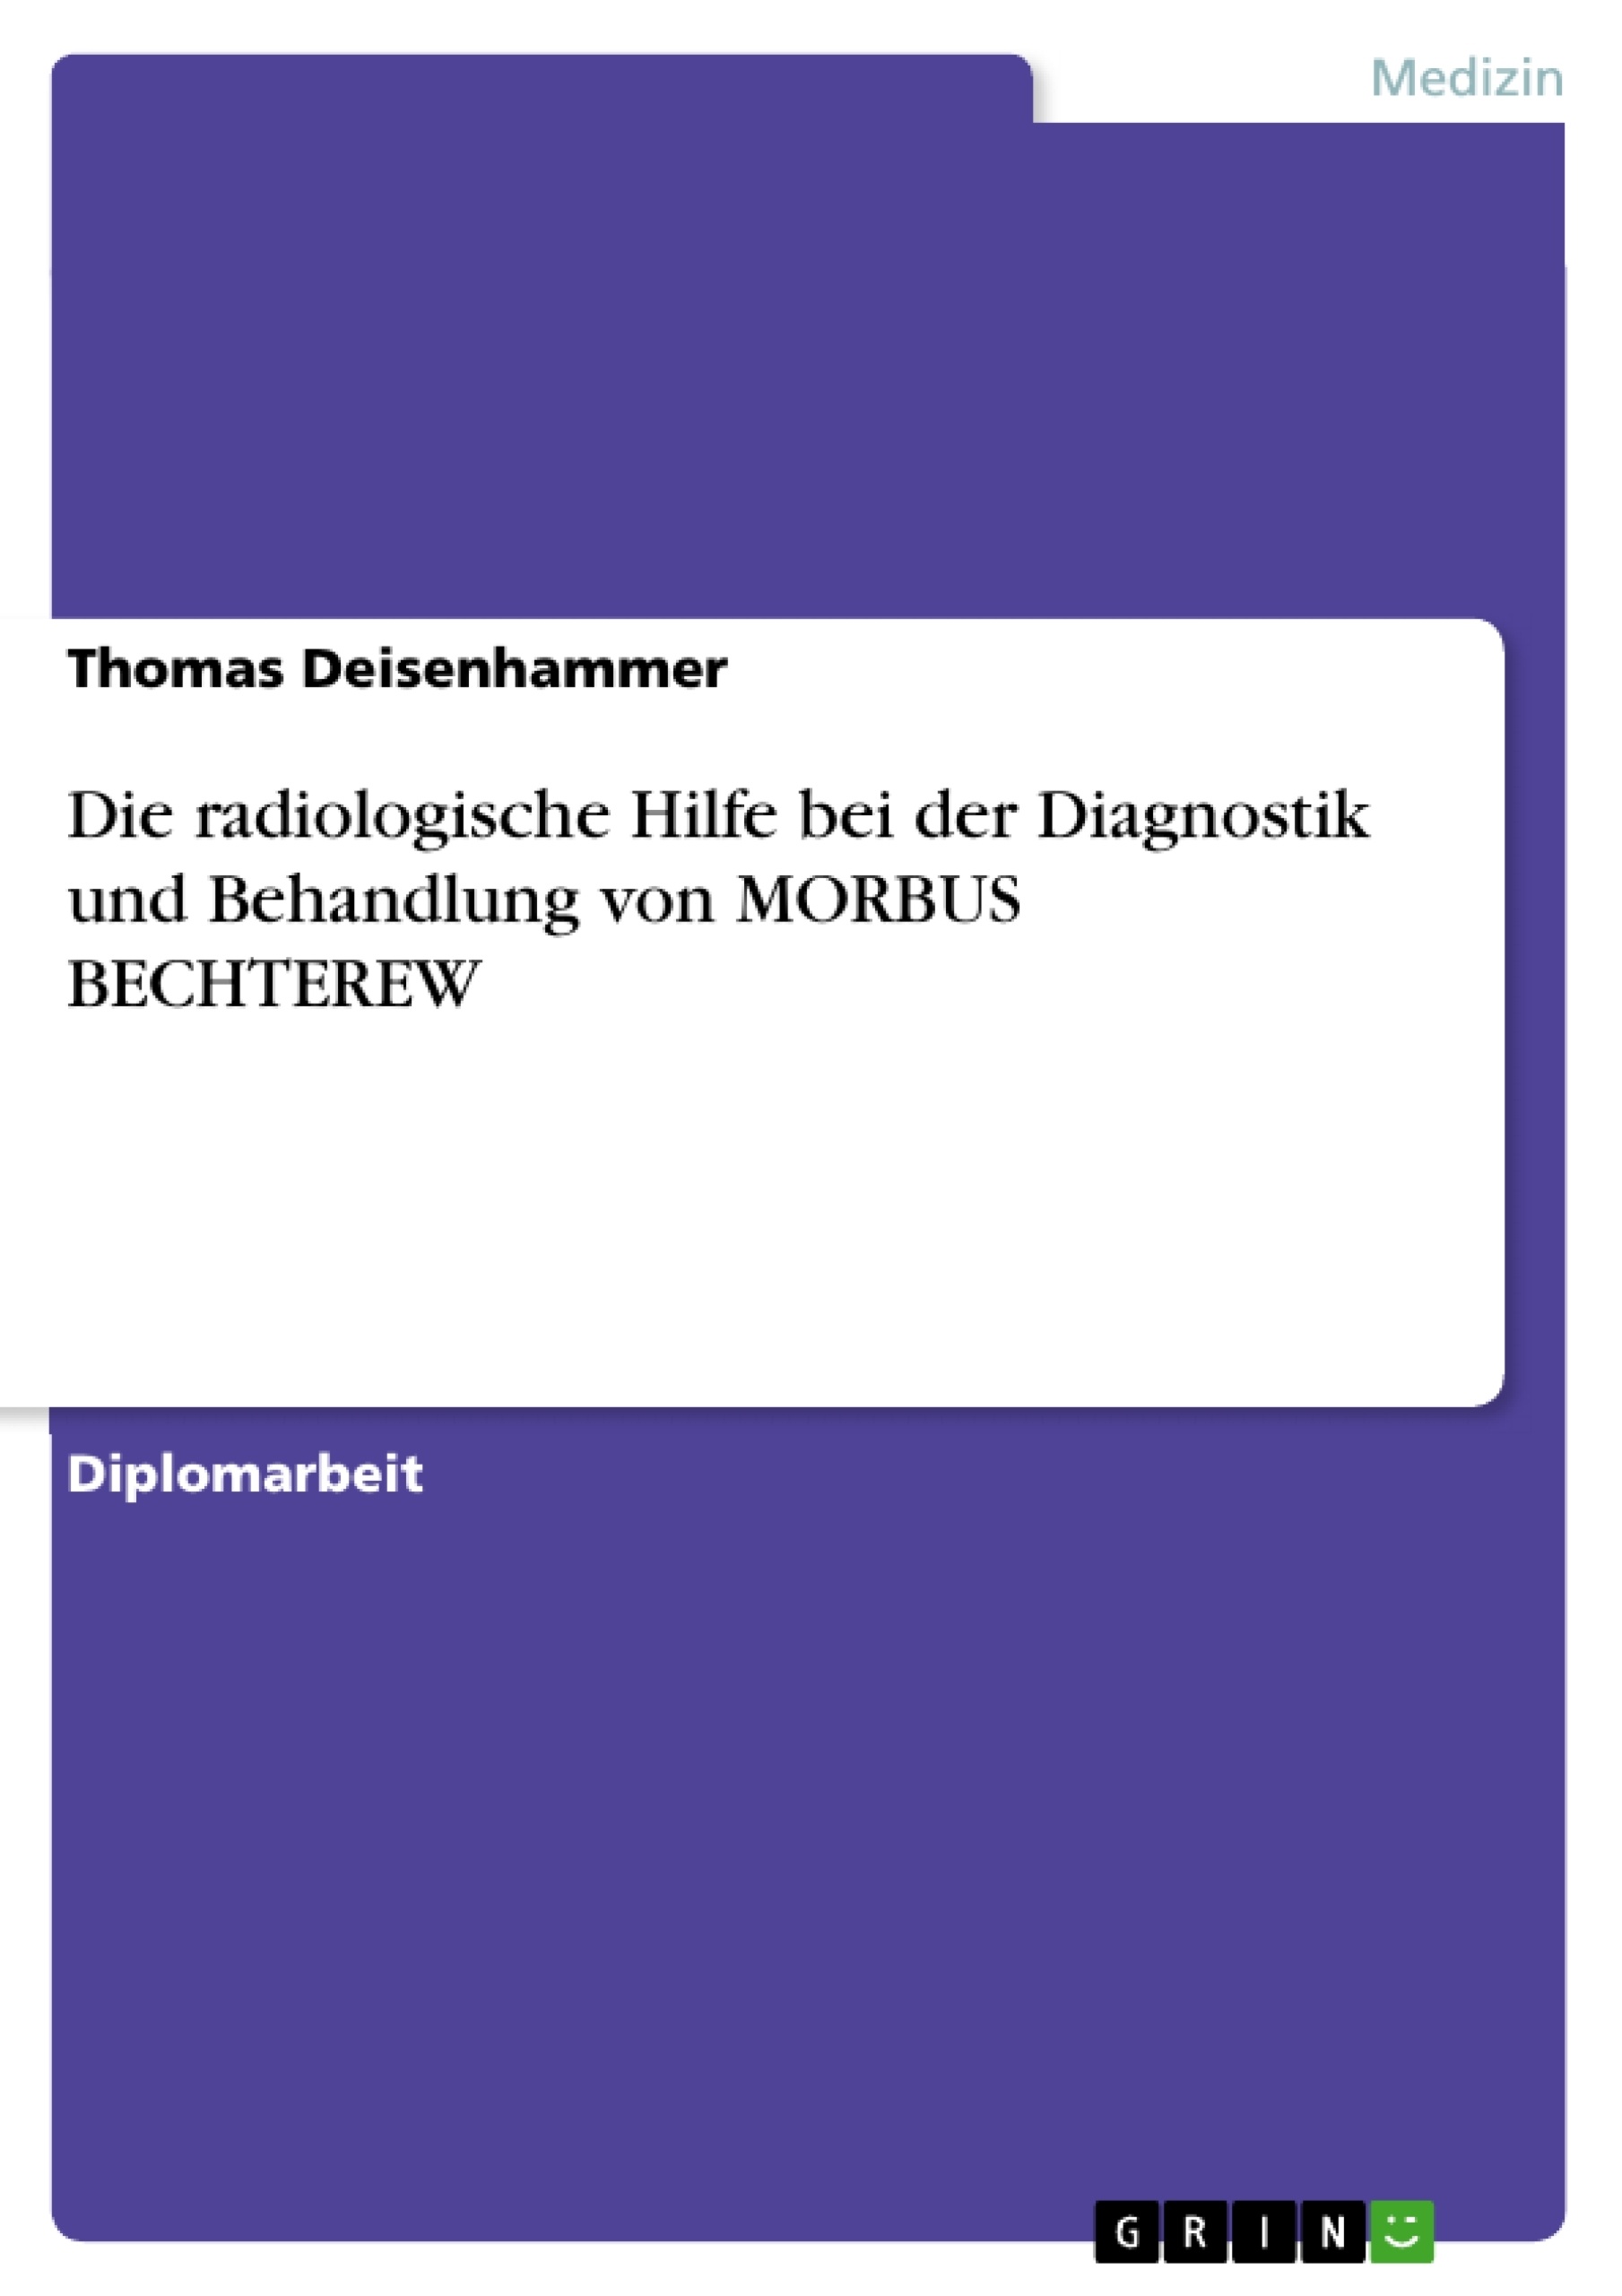 Title: Die radiologische Hilfe bei der Diagnostik und Behandlung von MORBUS BECHTEREW